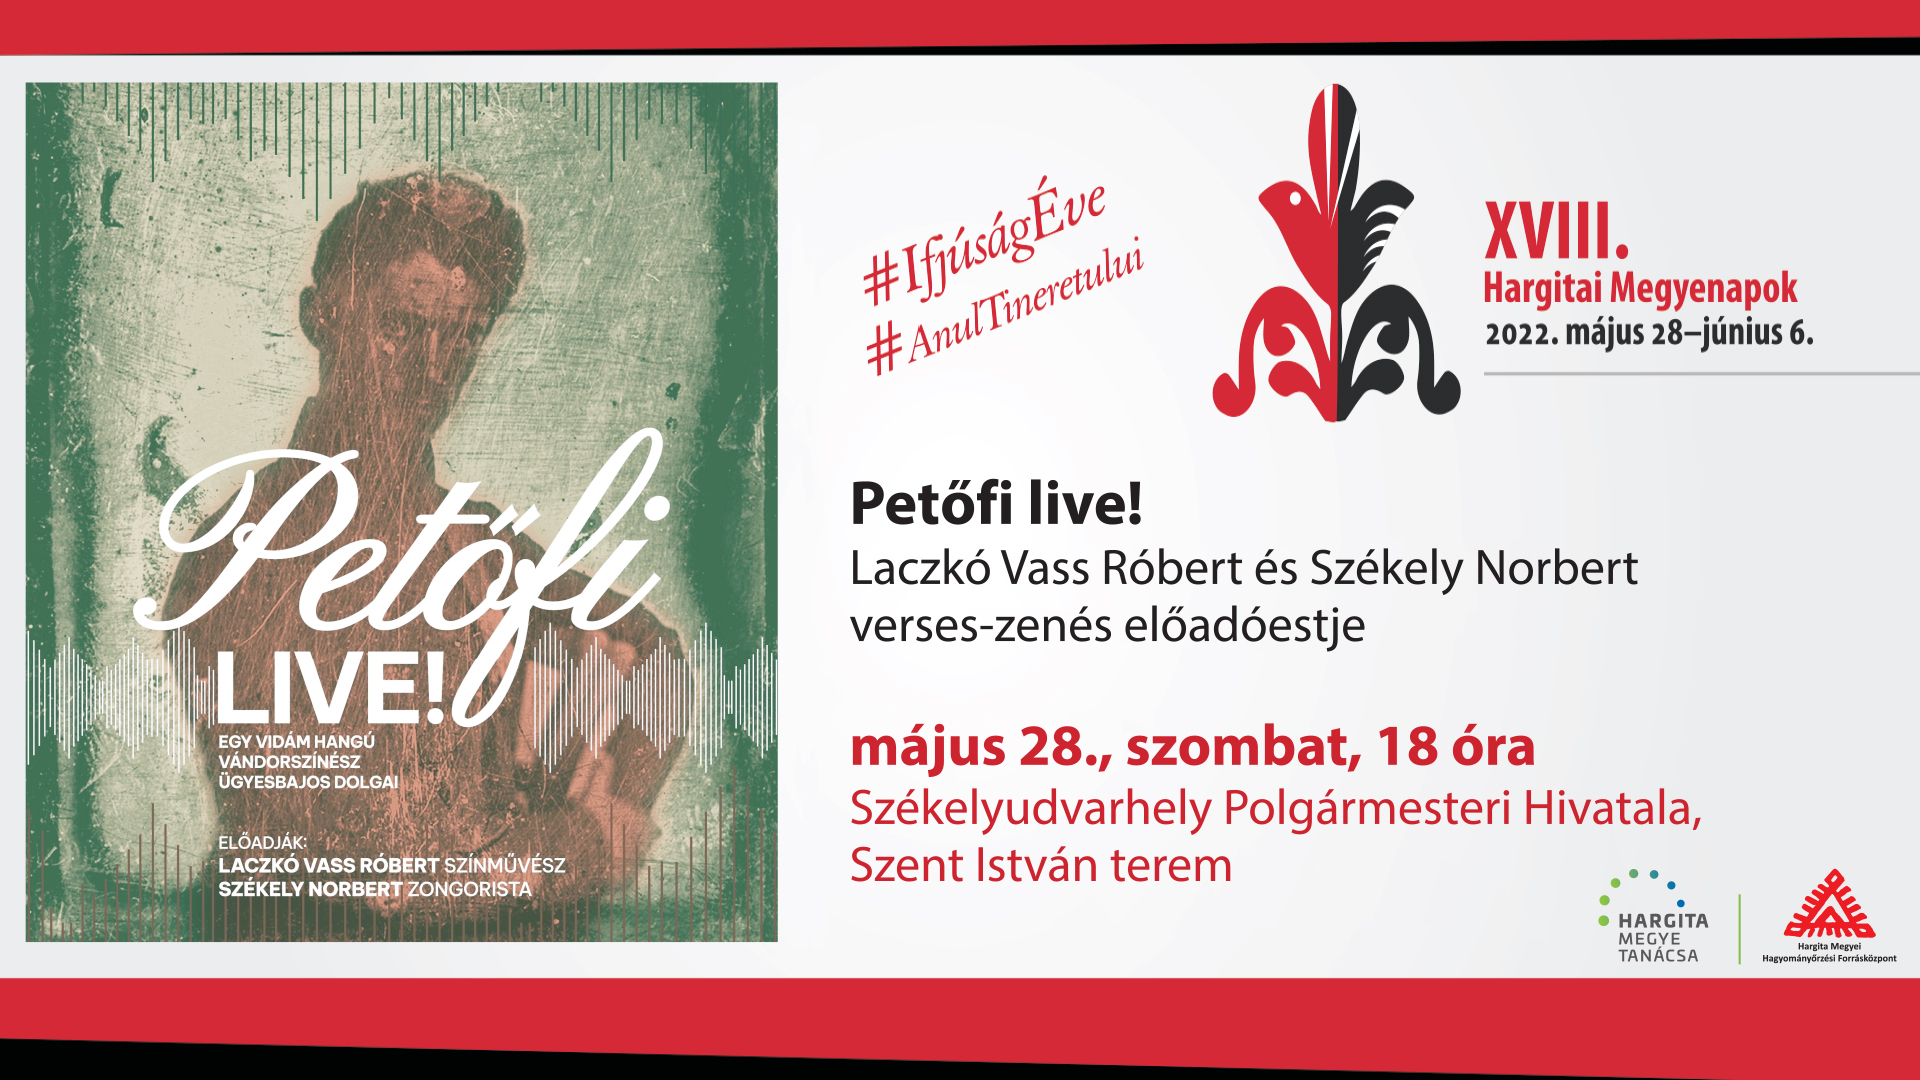 Petőfi Live! Portret Petőfi în prezentarea actorului Laczkó Vass Róbert și al pianistului Székely Norbert